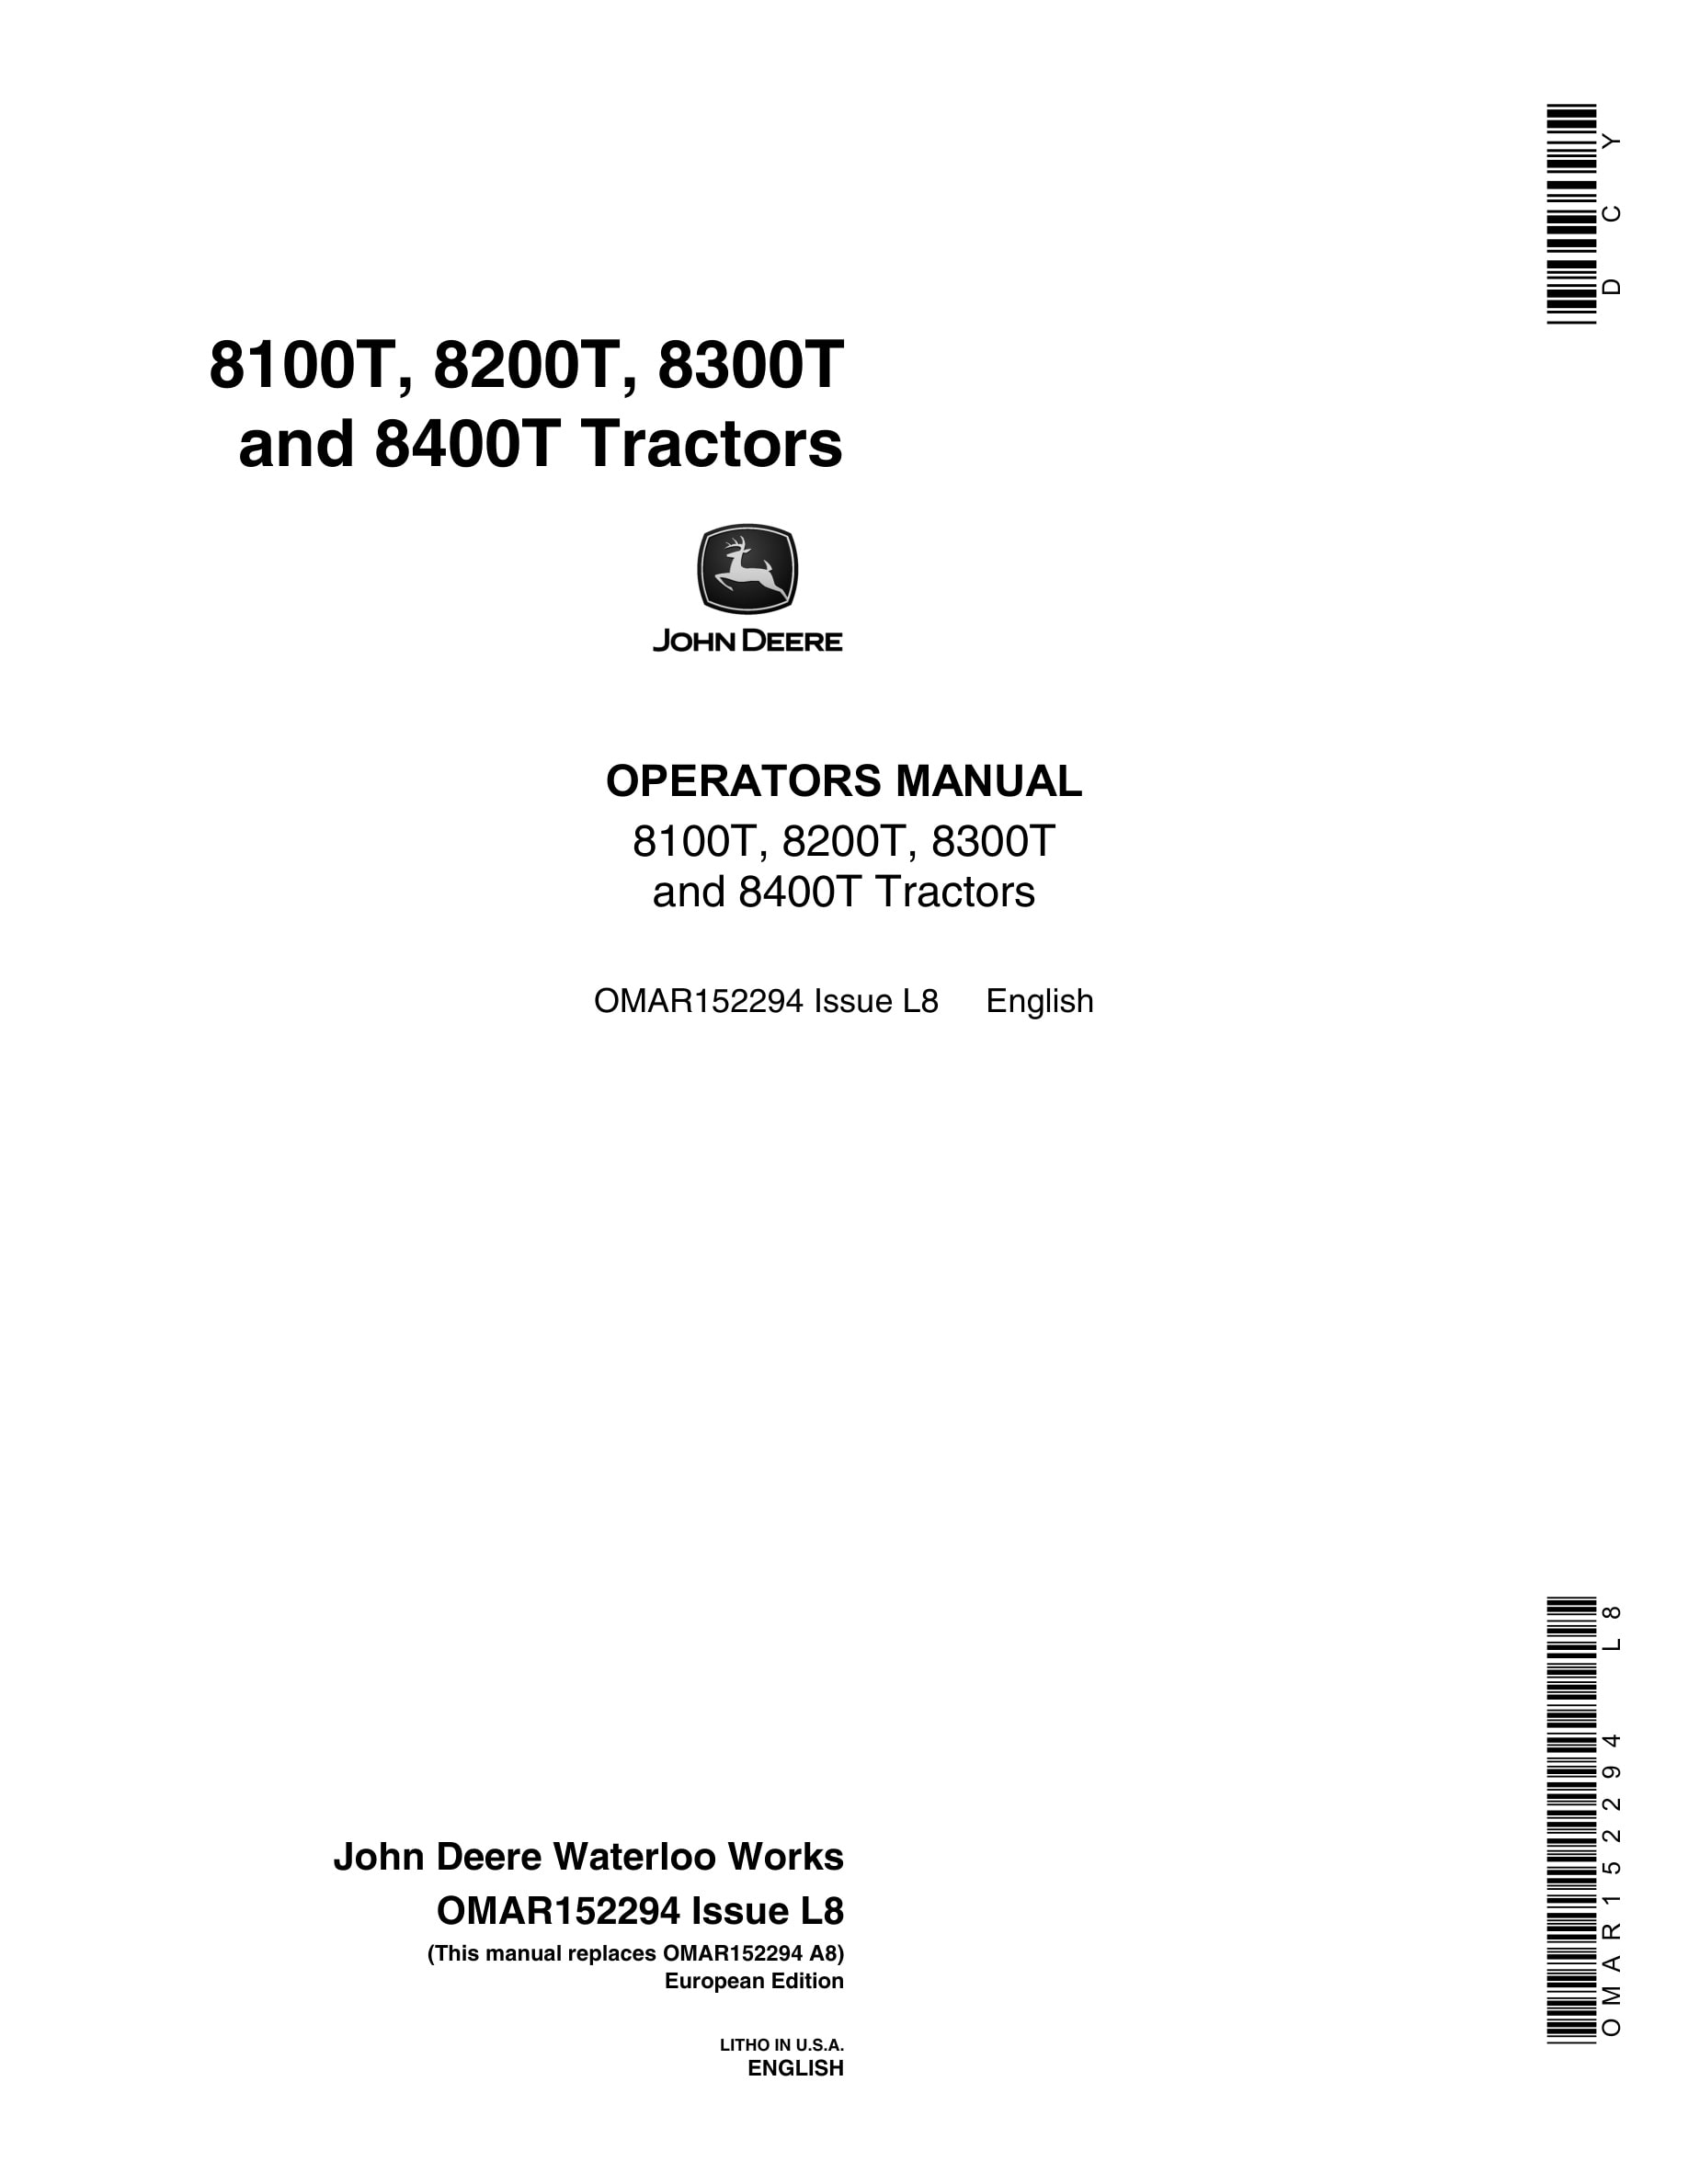 John Deere 8100t, 8200t, 8300t And 8400t Tractors Operator Manuals OMAR152294-1